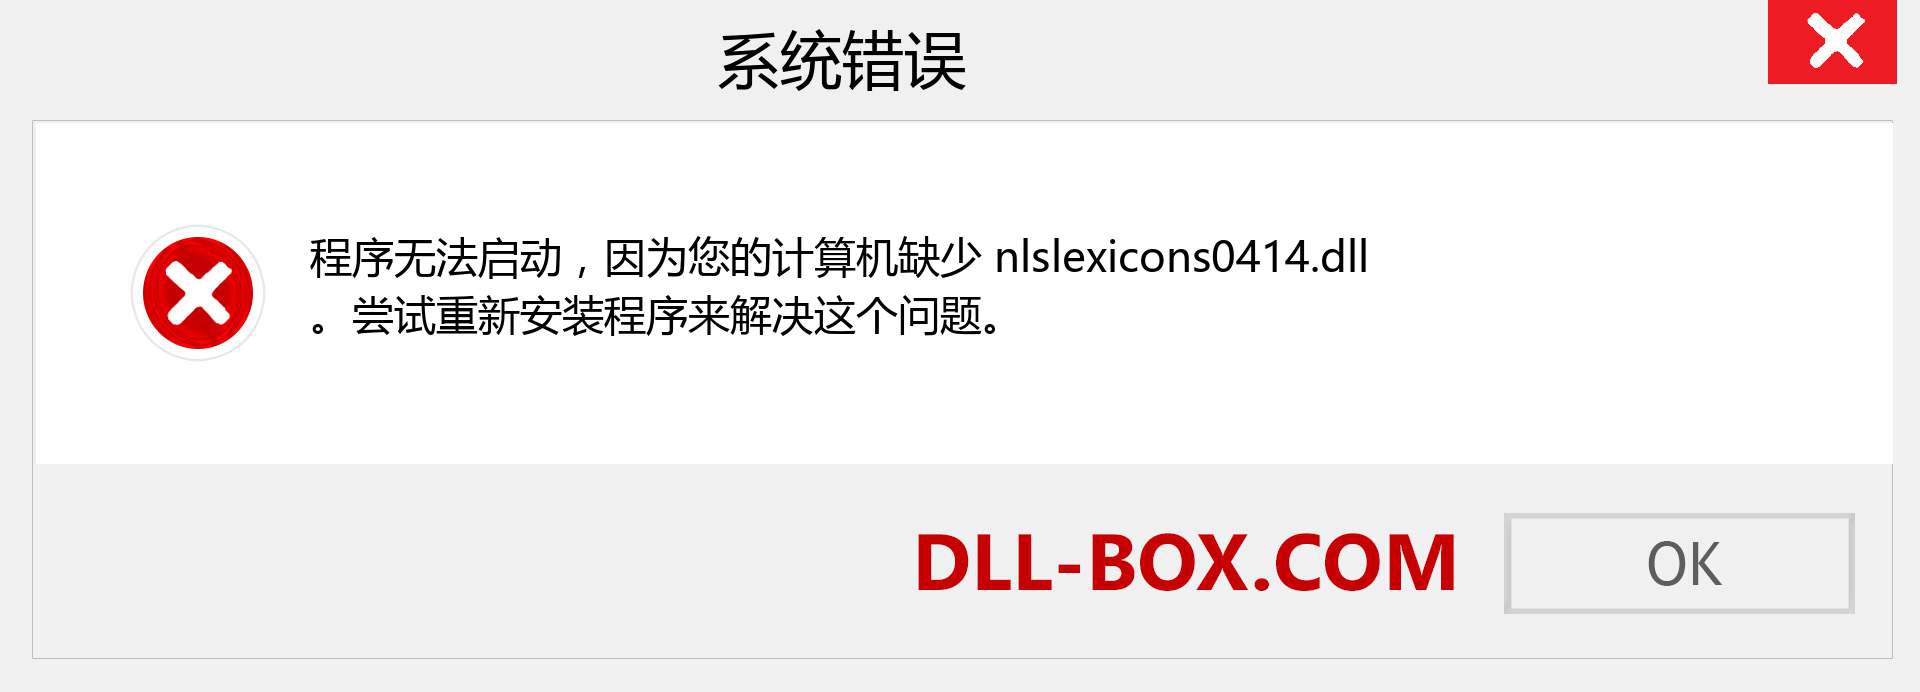 nlslexicons0414.dll 文件丢失？。 适用于 Windows 7、8、10 的下载 - 修复 Windows、照片、图像上的 nlslexicons0414 dll 丢失错误